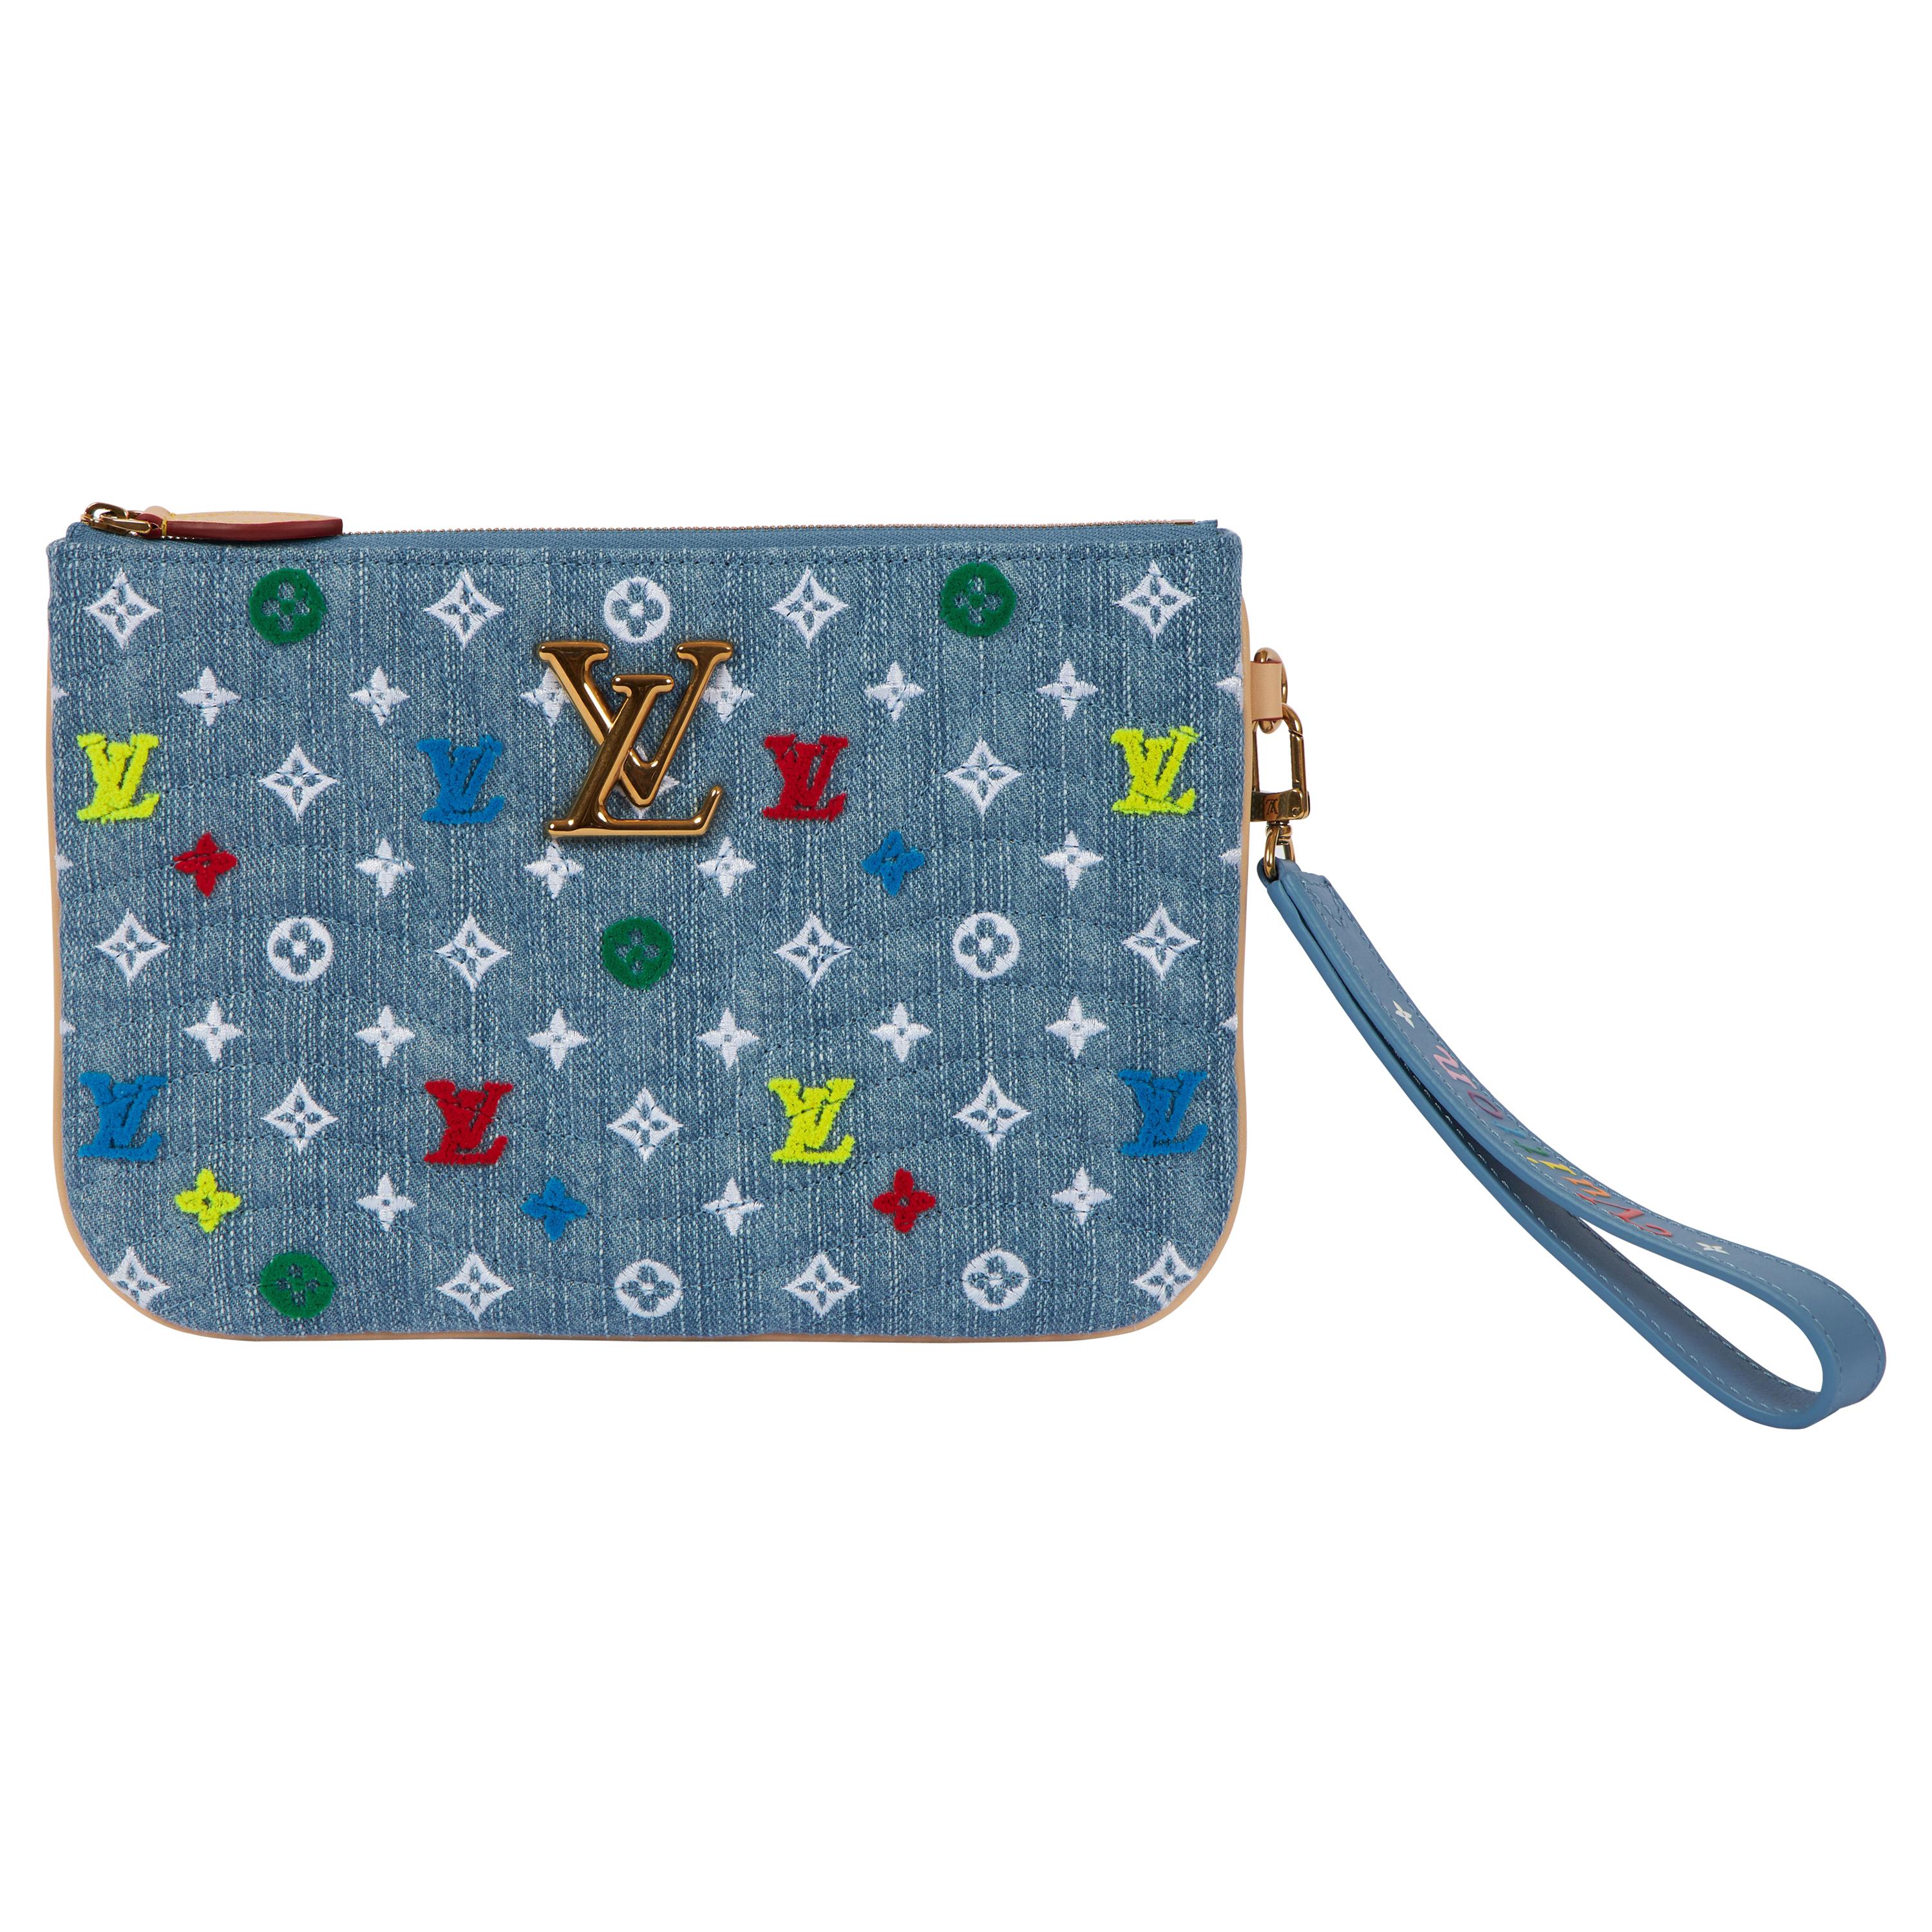 New Louis Vuitton Denim Multicolor Logo Pouchette Bag with Box